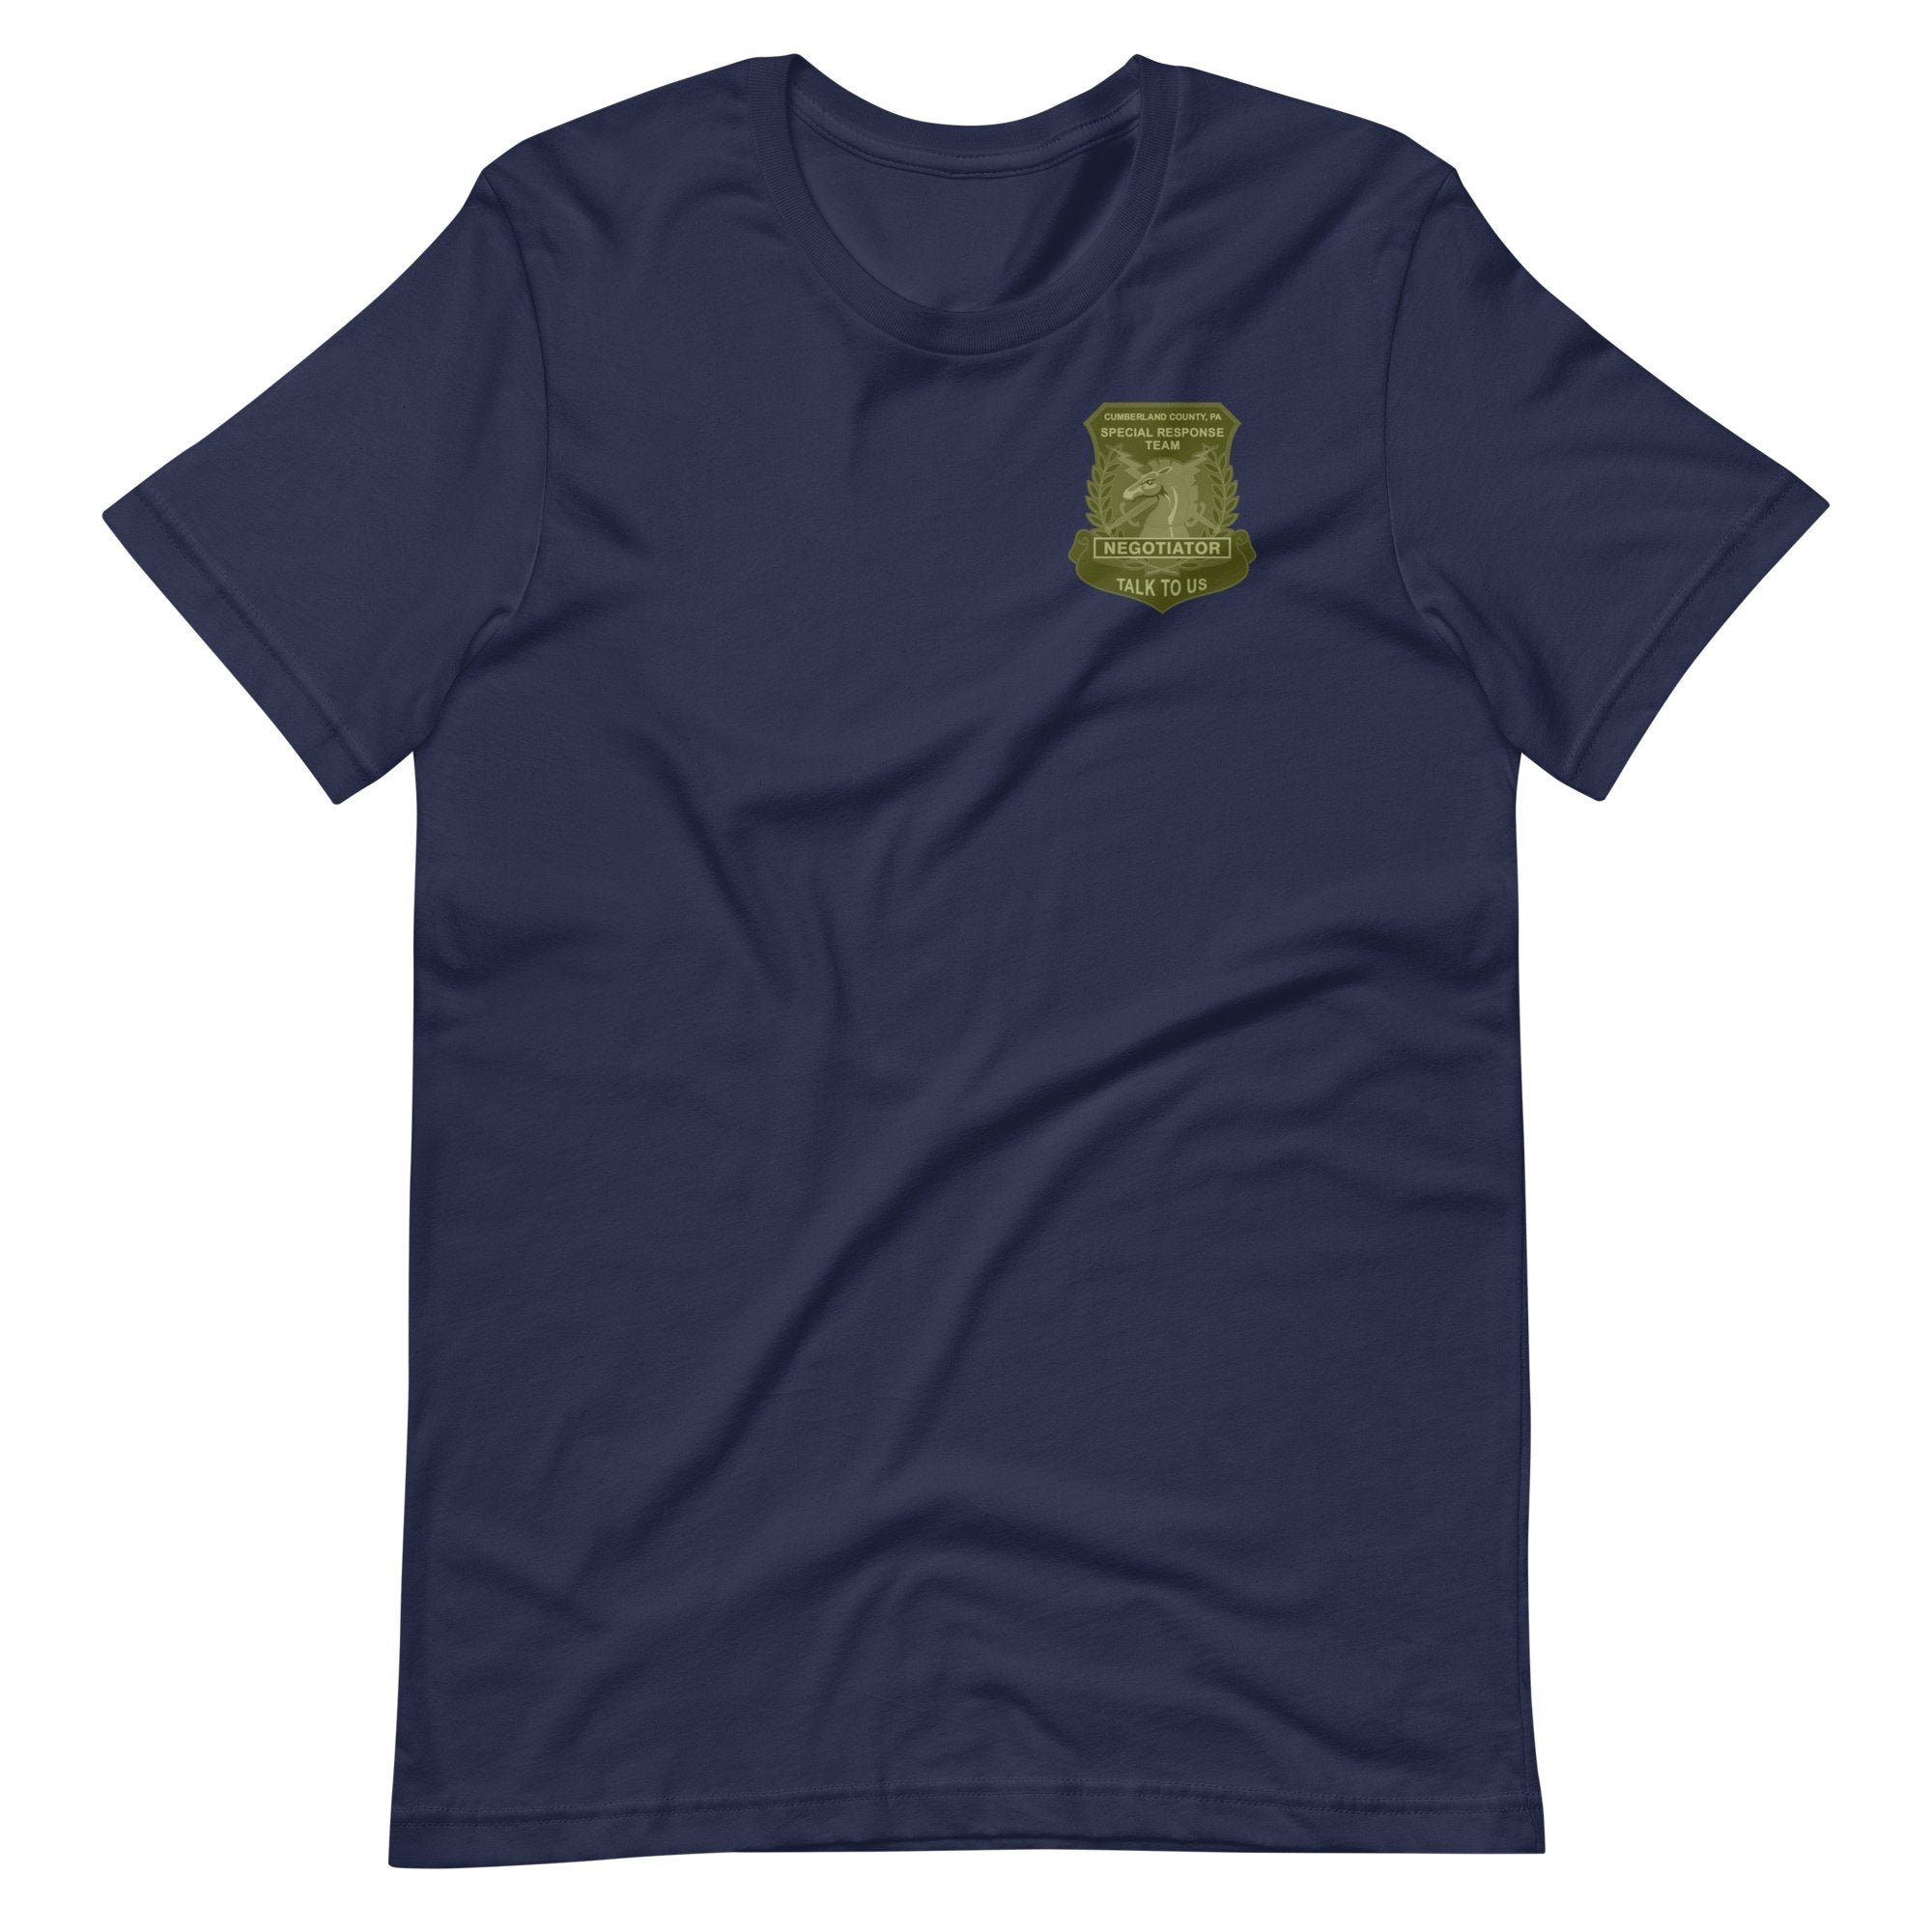 CCSRT - Negotiator Shirt - Green Print - SOARescue